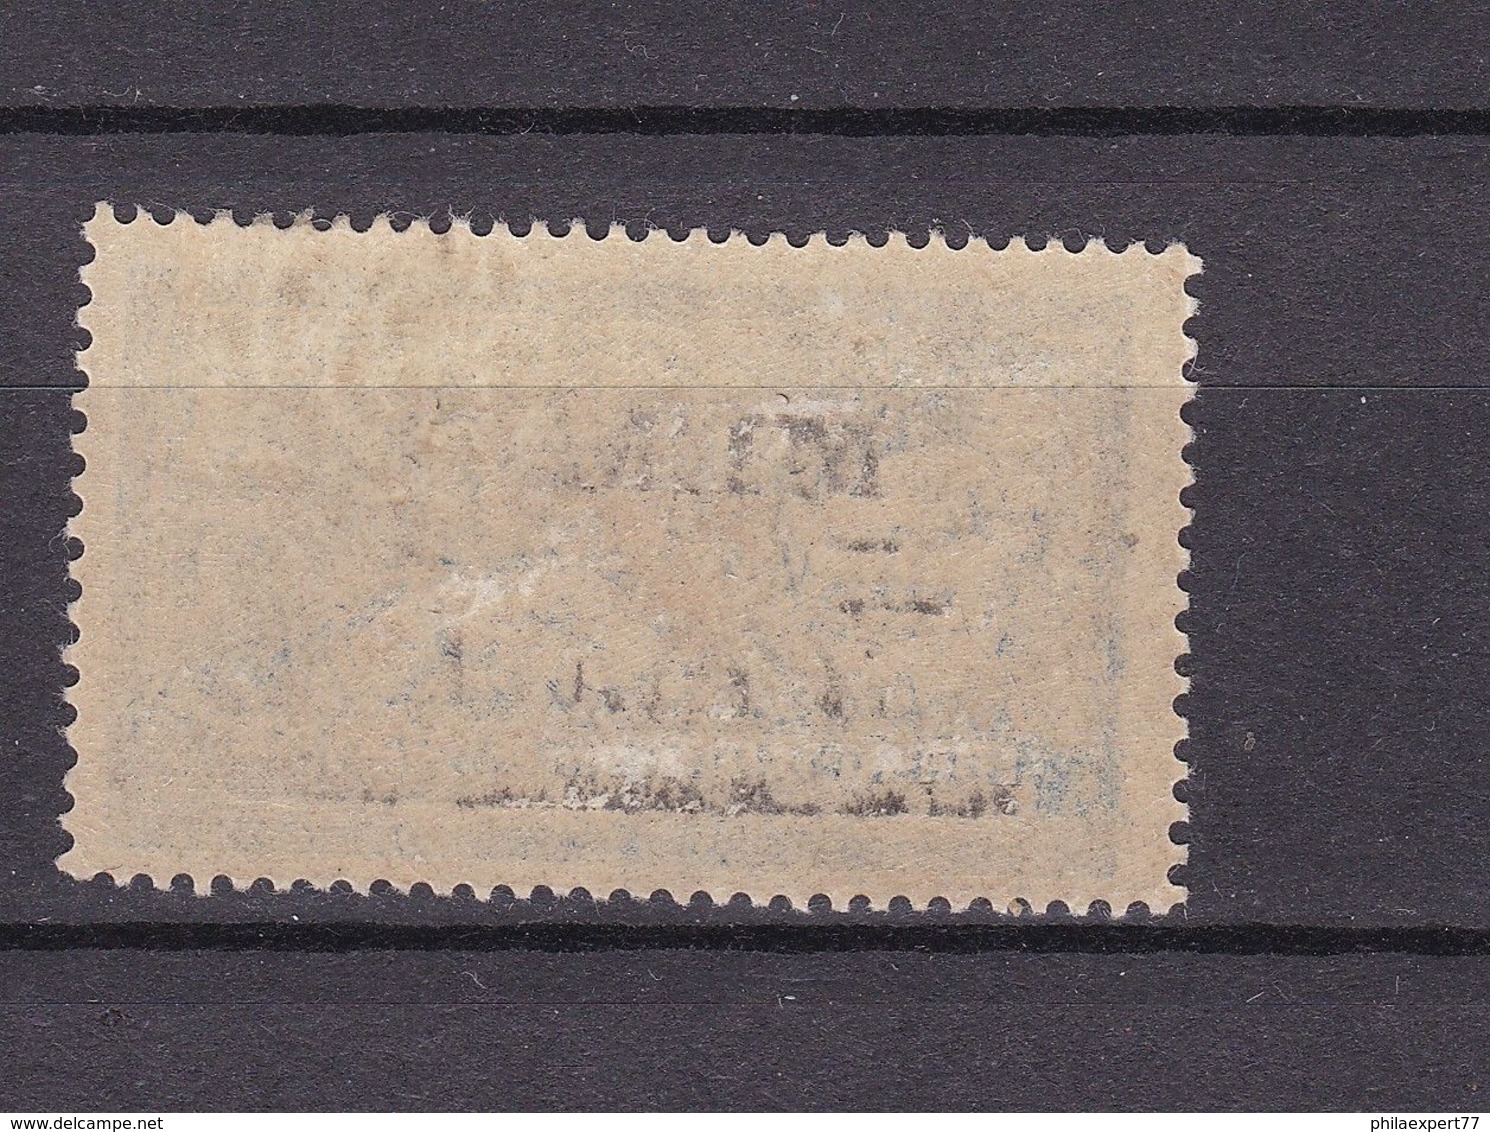 Memelgebiet - 1920/22 - Michel Nr. 30 - Ungebr. M. Falz - 40 Euro - Memel (Klaipeda) 1923